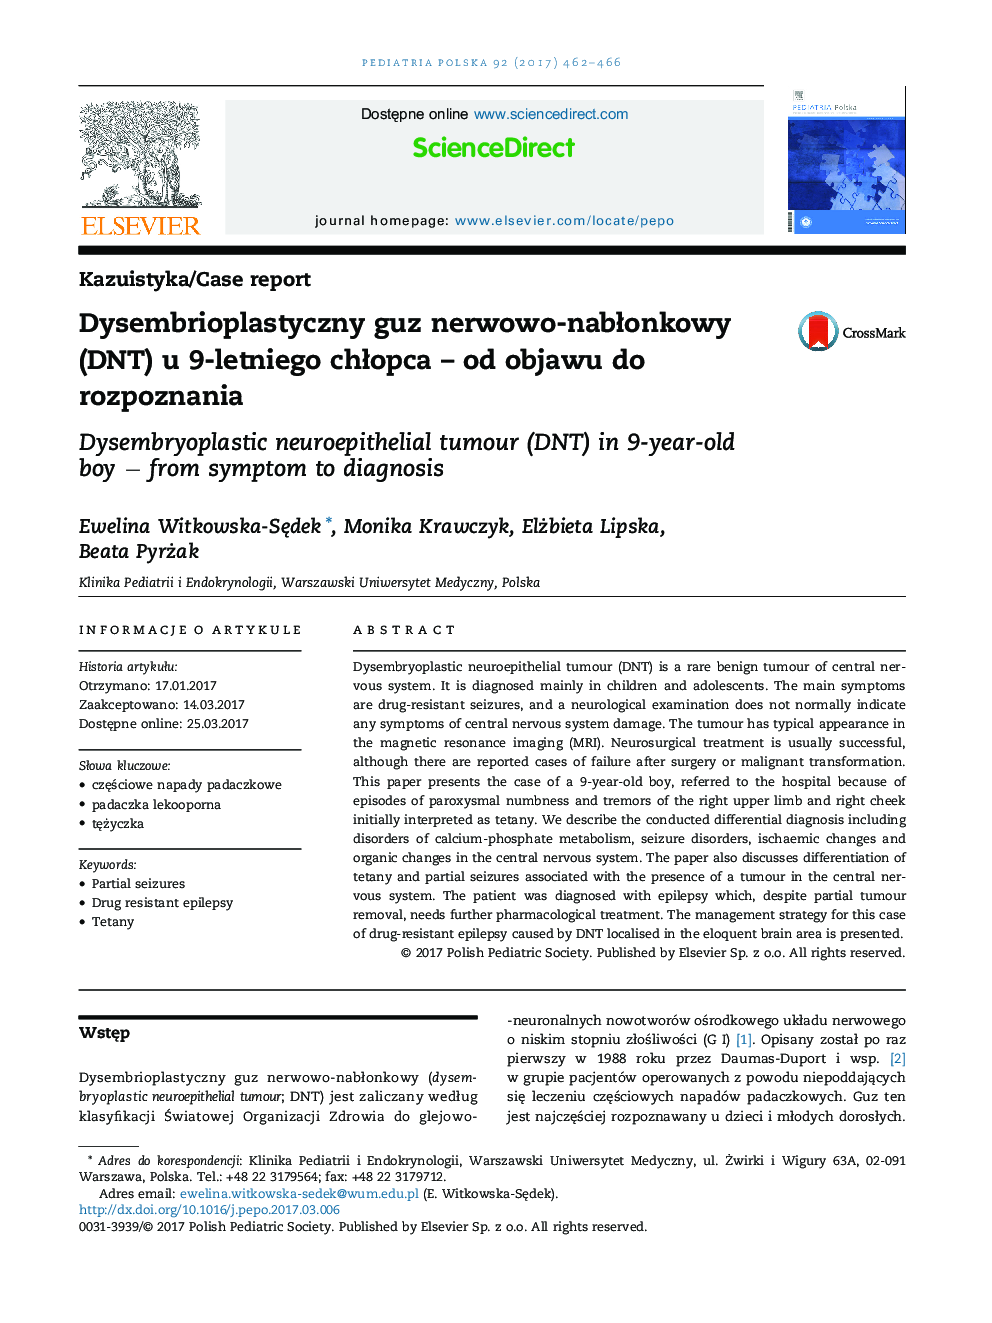 Dysembrioplastyczny guz nerwowo-nabÅonkowy (DNT) u 9-letniego chÅopca - od objawu do rozpoznania